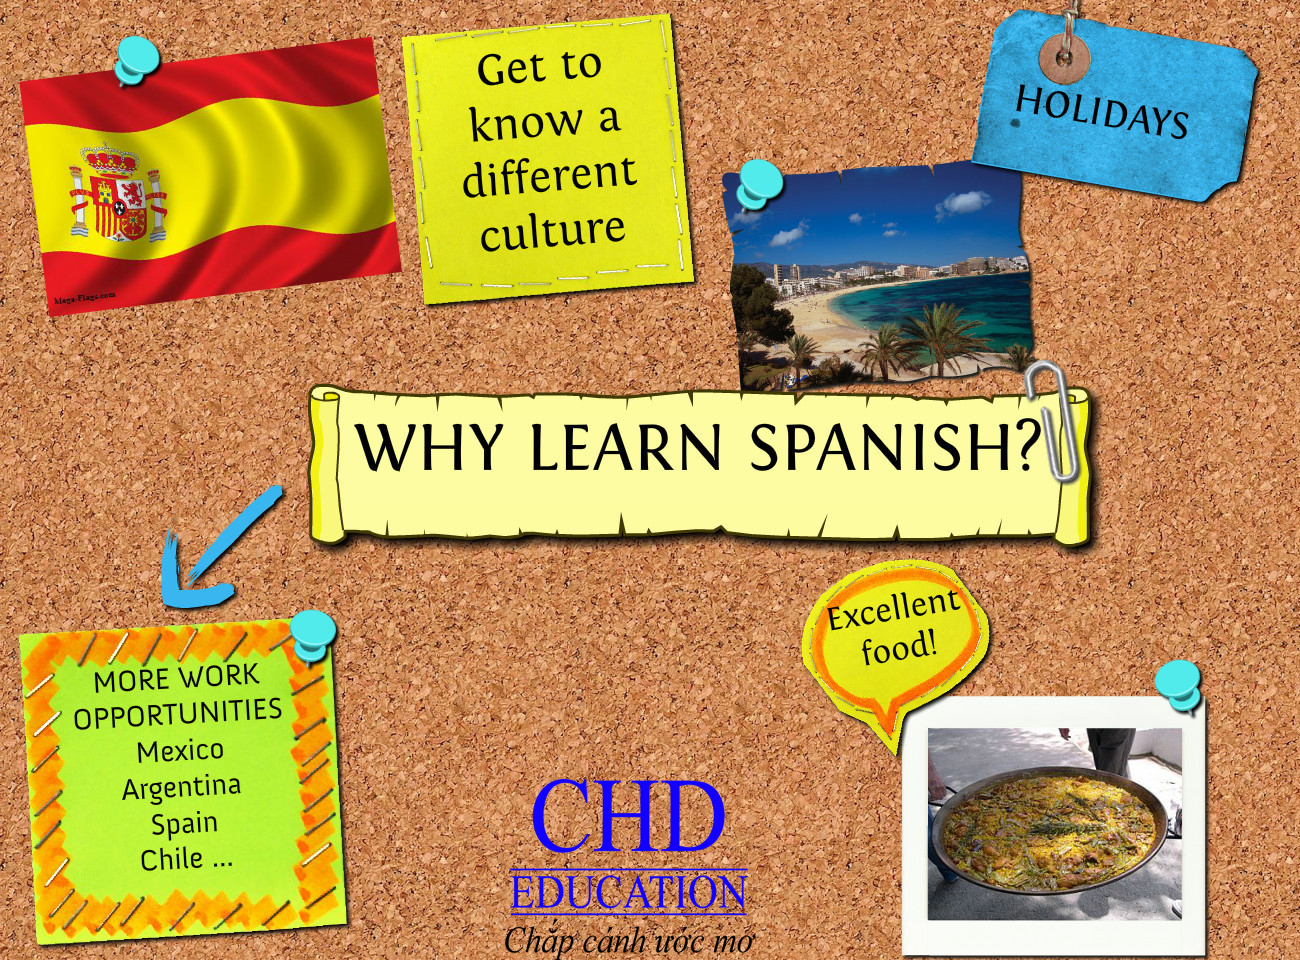 Khai giảng khoá học tiếng Tây Ban Nha sơ cấp tháng 4/2014 tại CHD